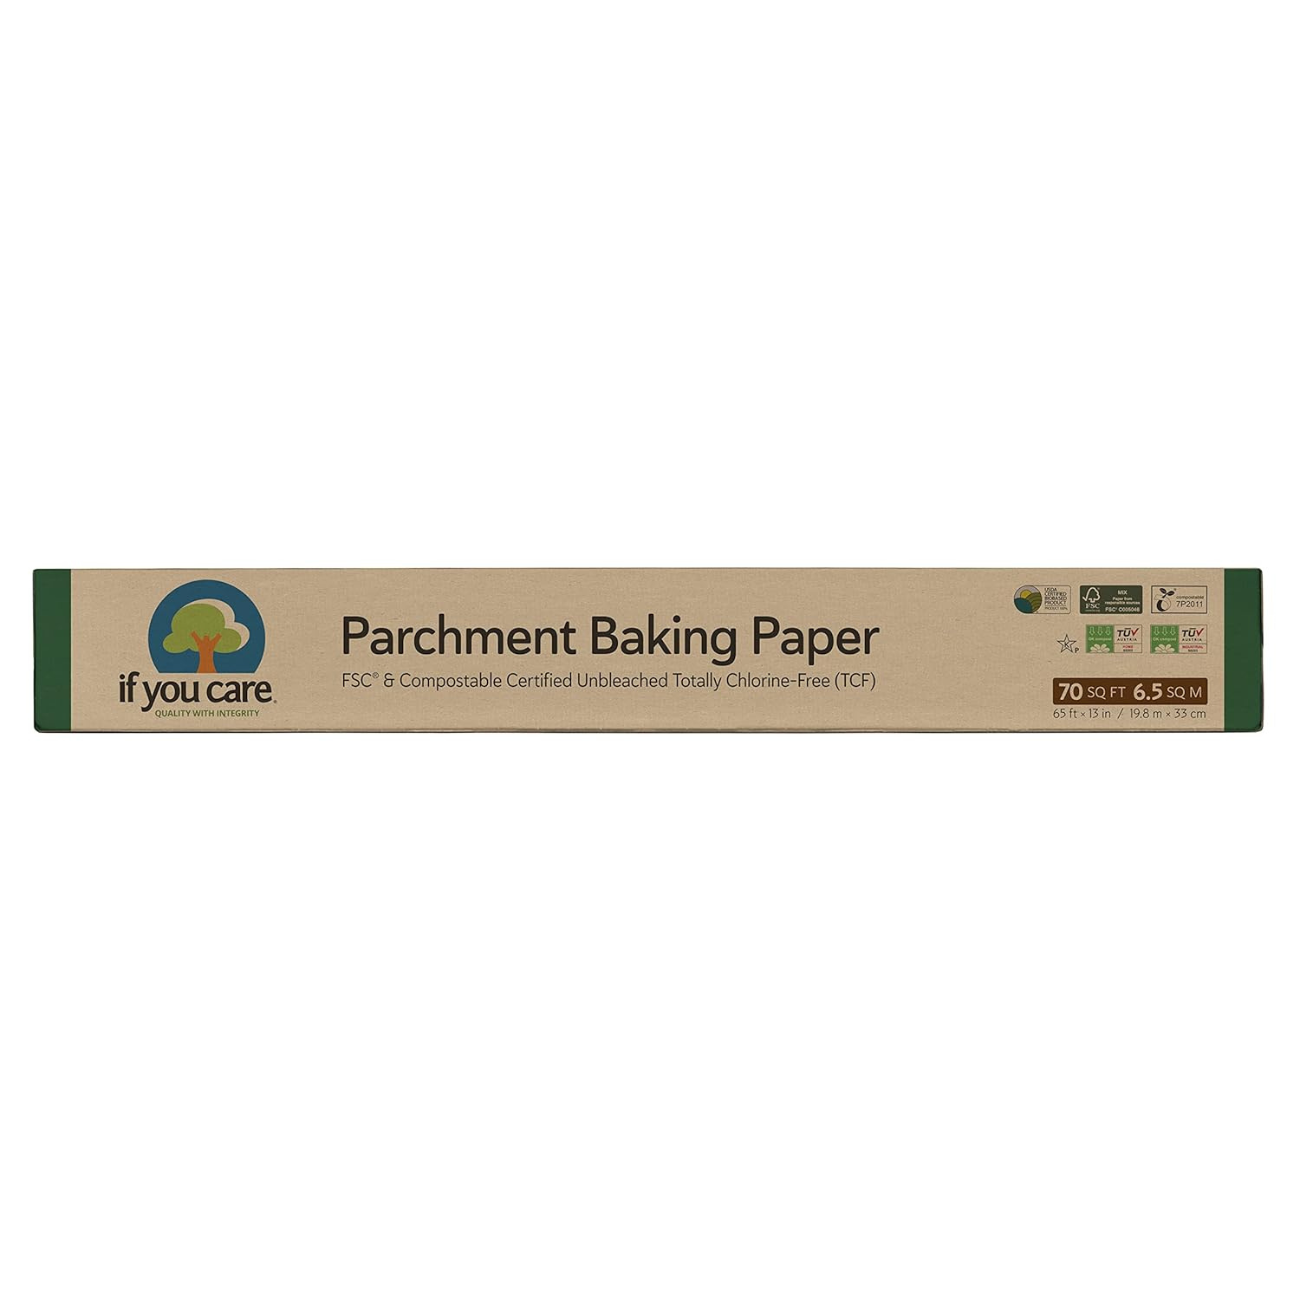 Parchment Baking Paper 6.5 sq mt box